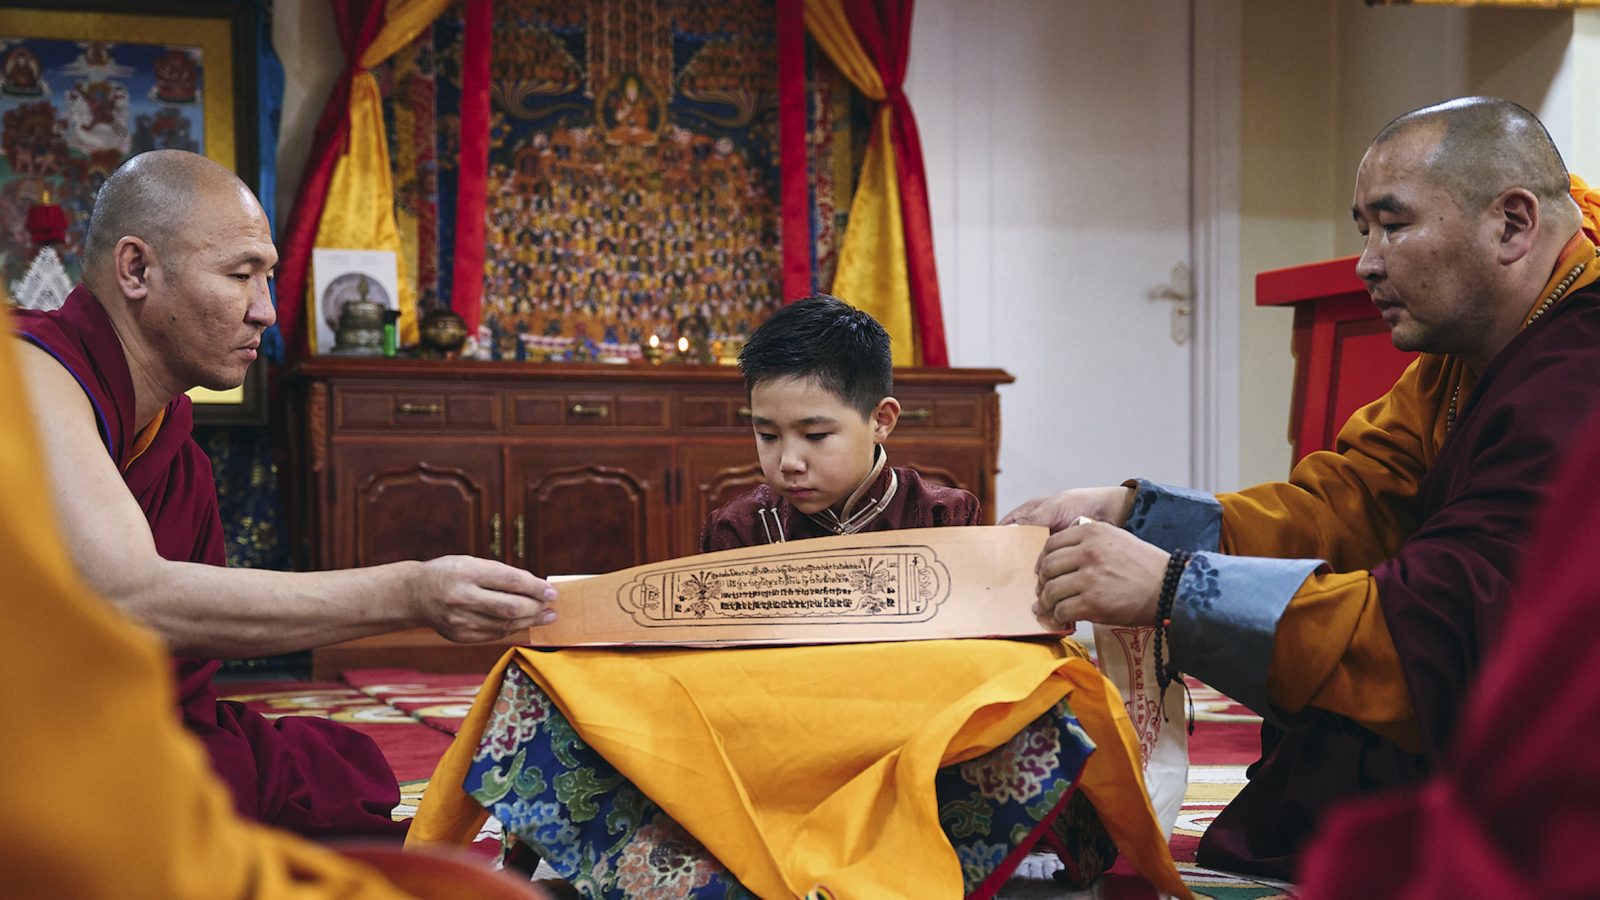 モンゴルの8歳の少年が「チベット仏教」をめぐる争いの中心にいる理由 | ダライ・ラマと中国共産党の狹間で